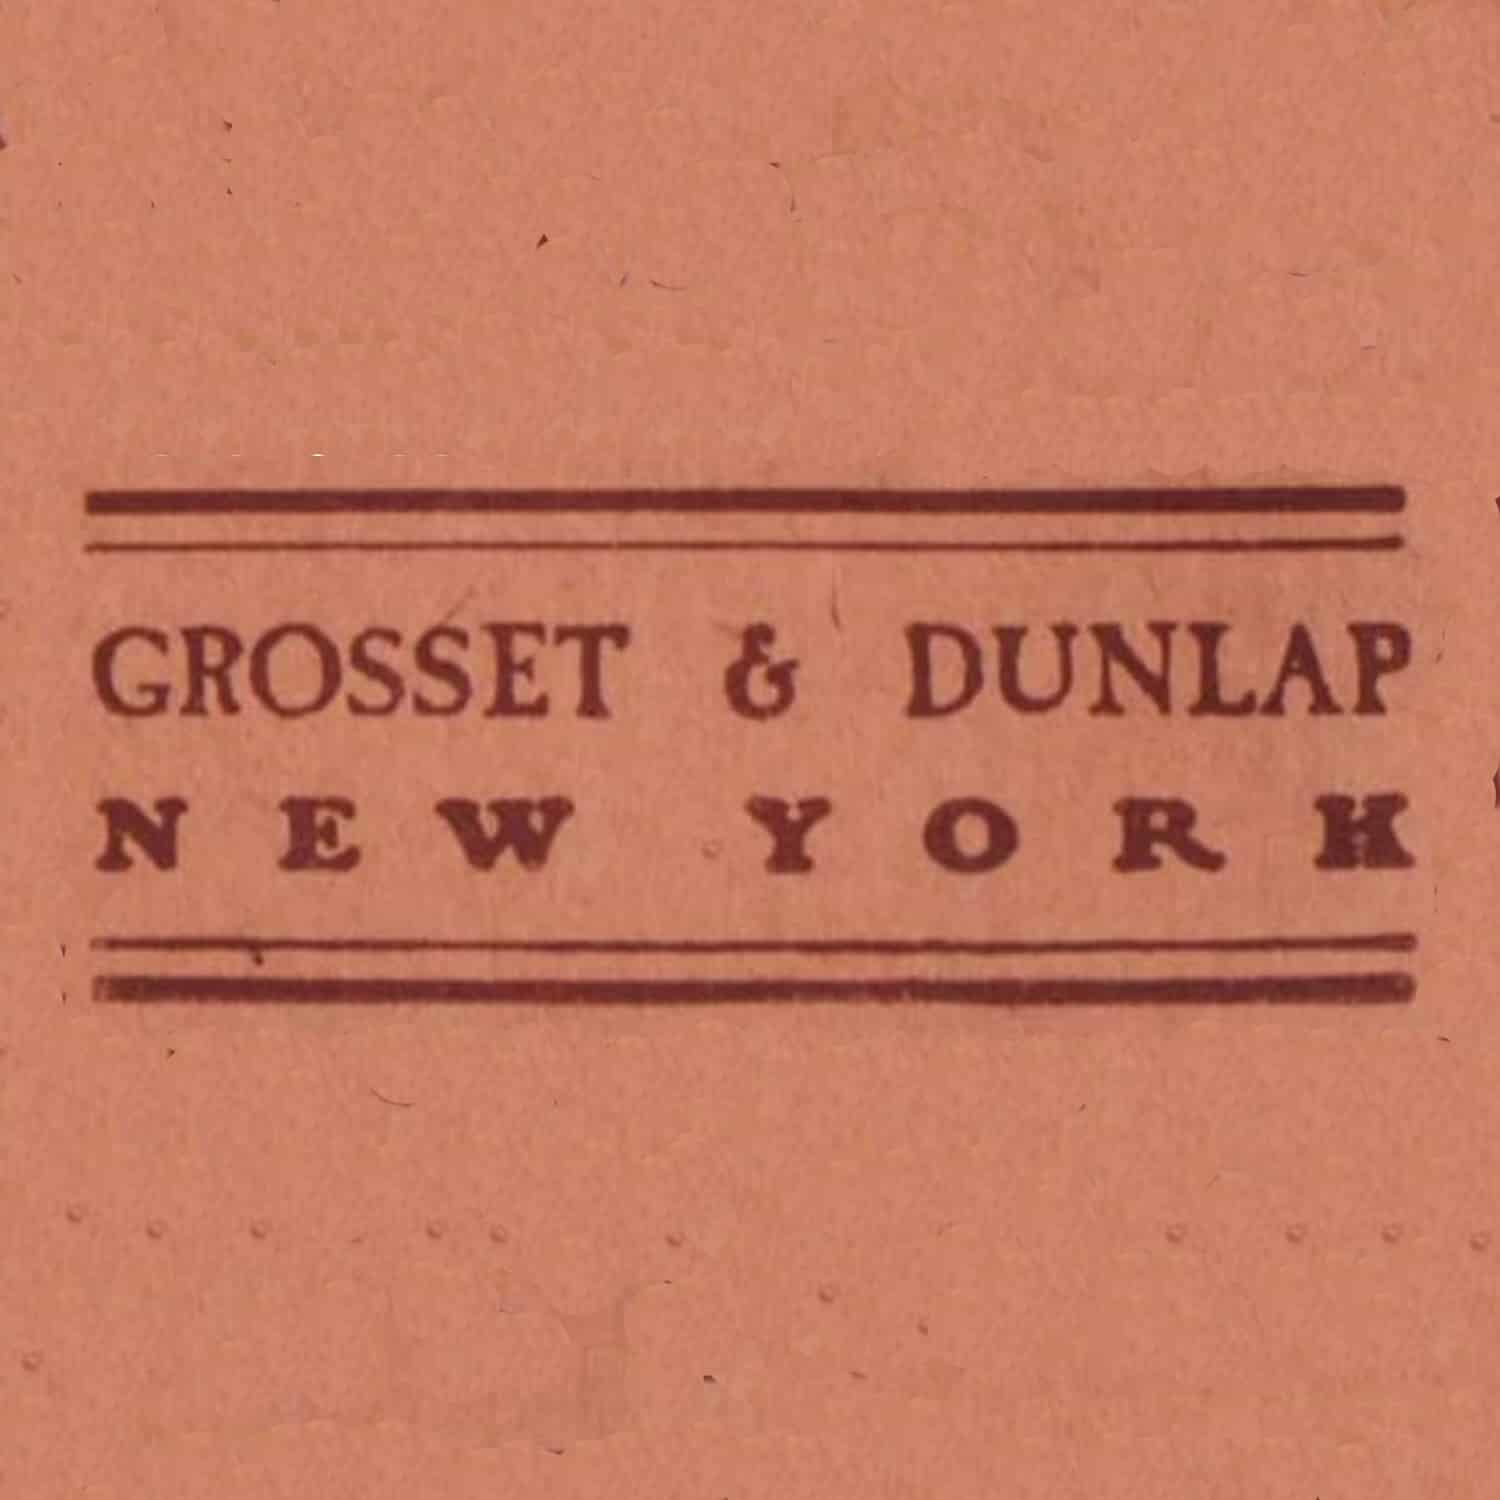 Grosset & Dunlap Inc.,U.S.